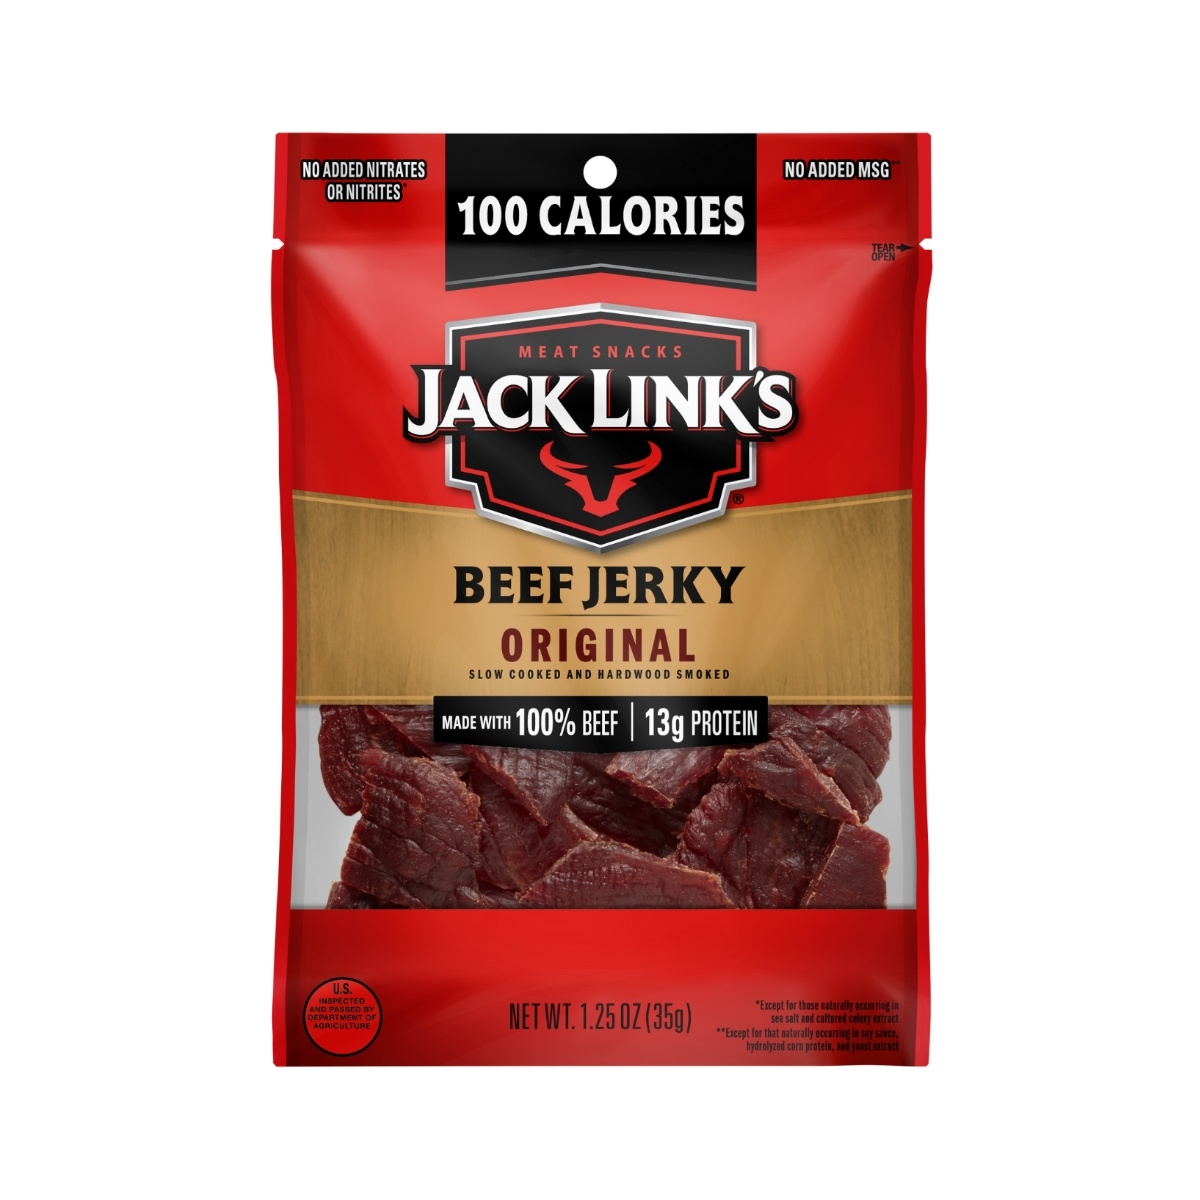 Jack Link's Carne seca original, gran aperitivo diario, 0.35 oz de proteína  y 80 calorías, hecha con 100% carne de res, 96% libre de grasa, sin MSG